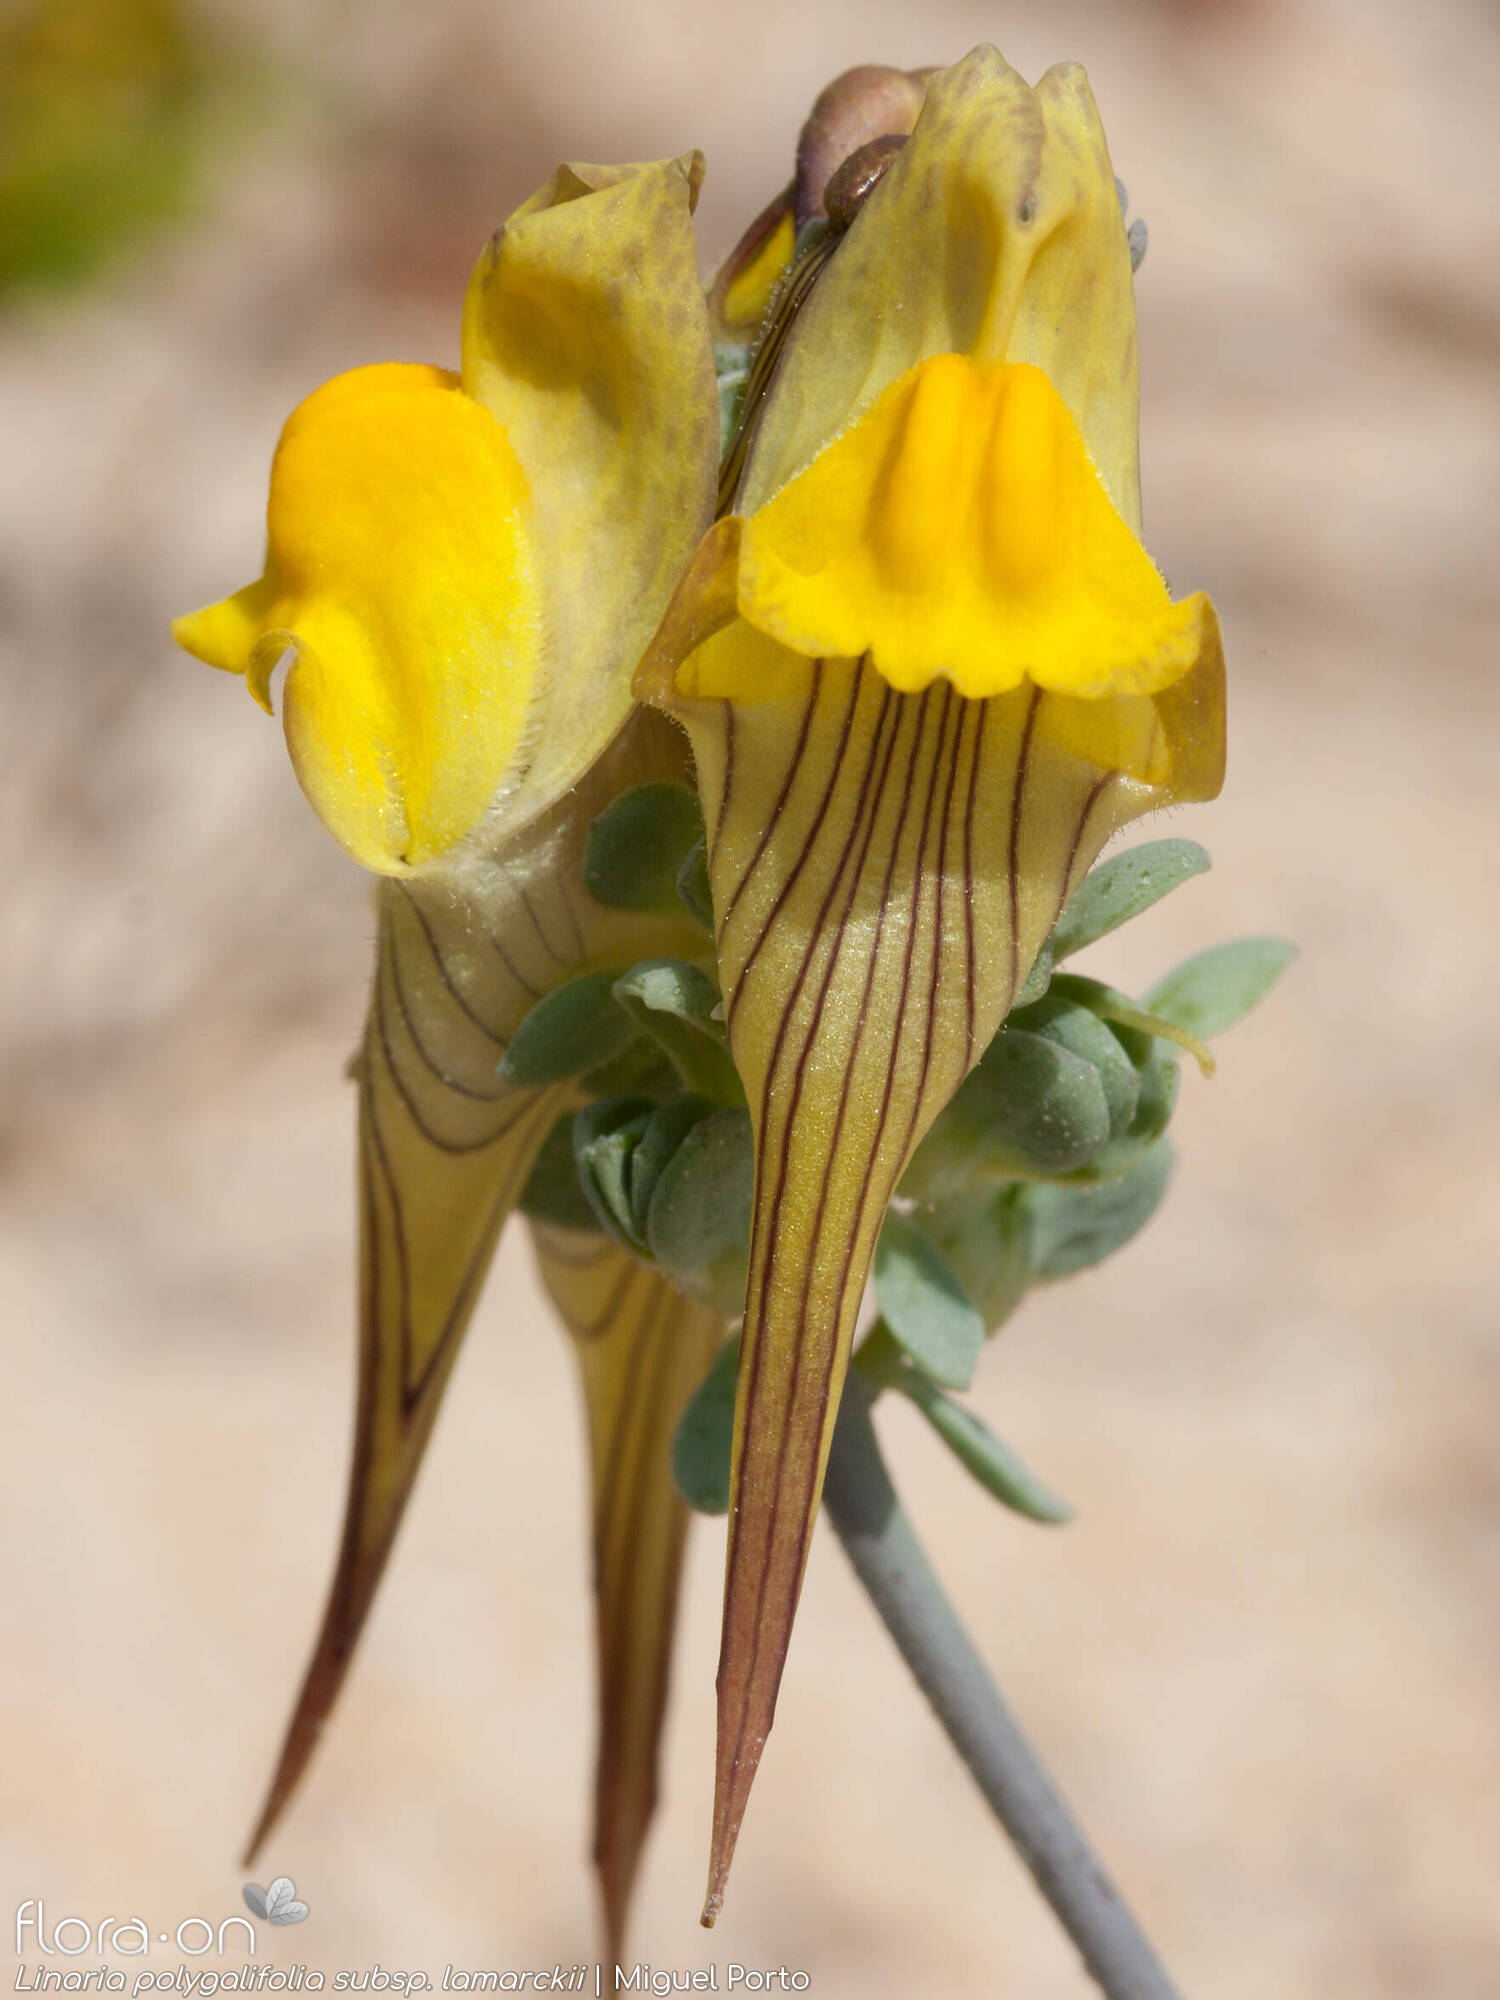 Linaria polygalifolia - Flor (geral) | Miguel Porto; CC BY-NC 4.0